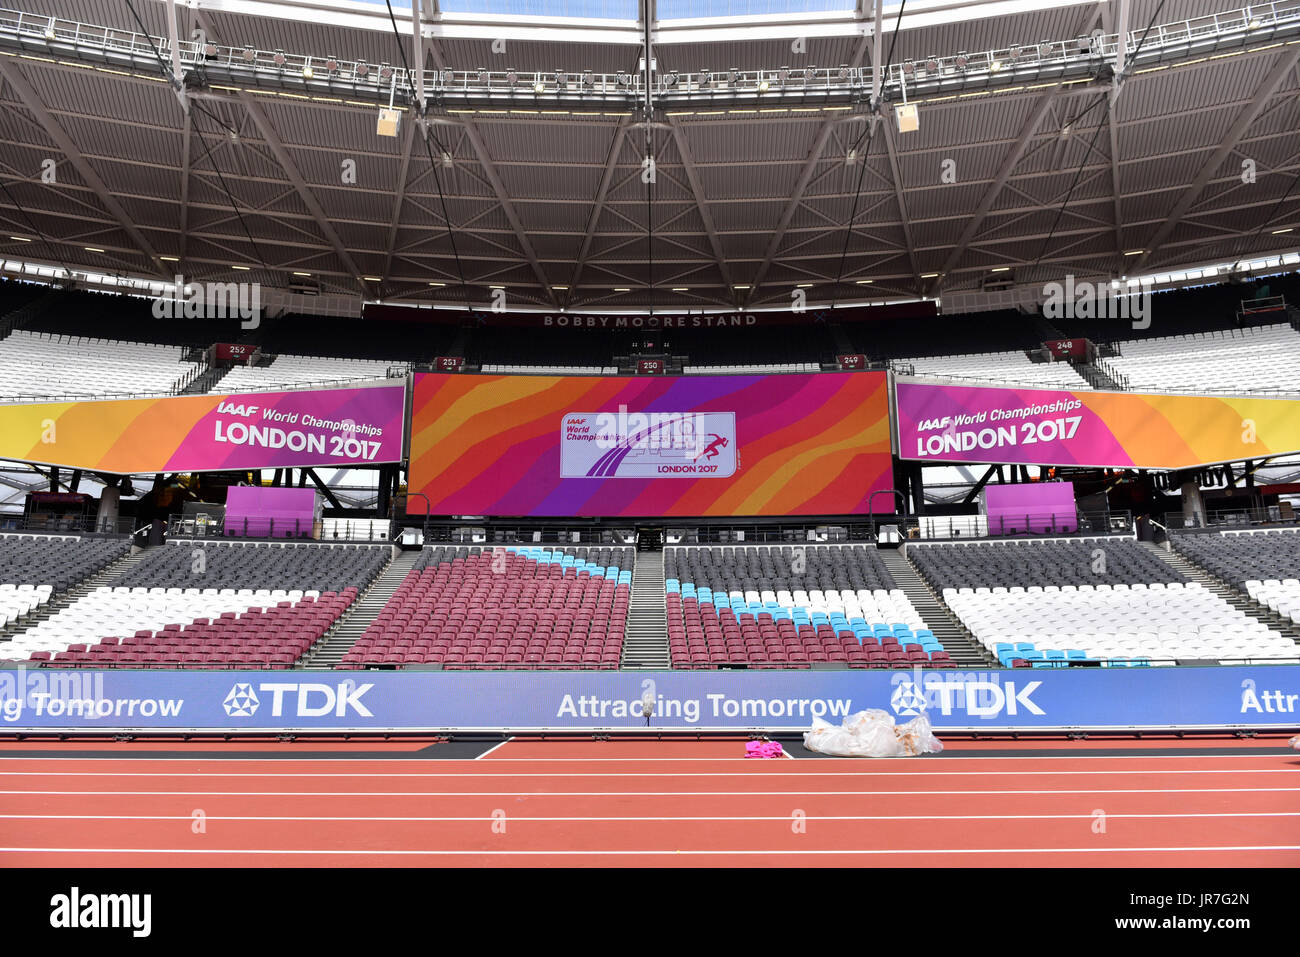 Londres, Royaume-Uni. 4 août 2017. L'affichage à l'Londres, stade de l'avant de l'IAAF World Championships London 2017 qui commencent plus tard ce soir. Crédit : Stephen Chung / Alamy Live News Banque D'Images